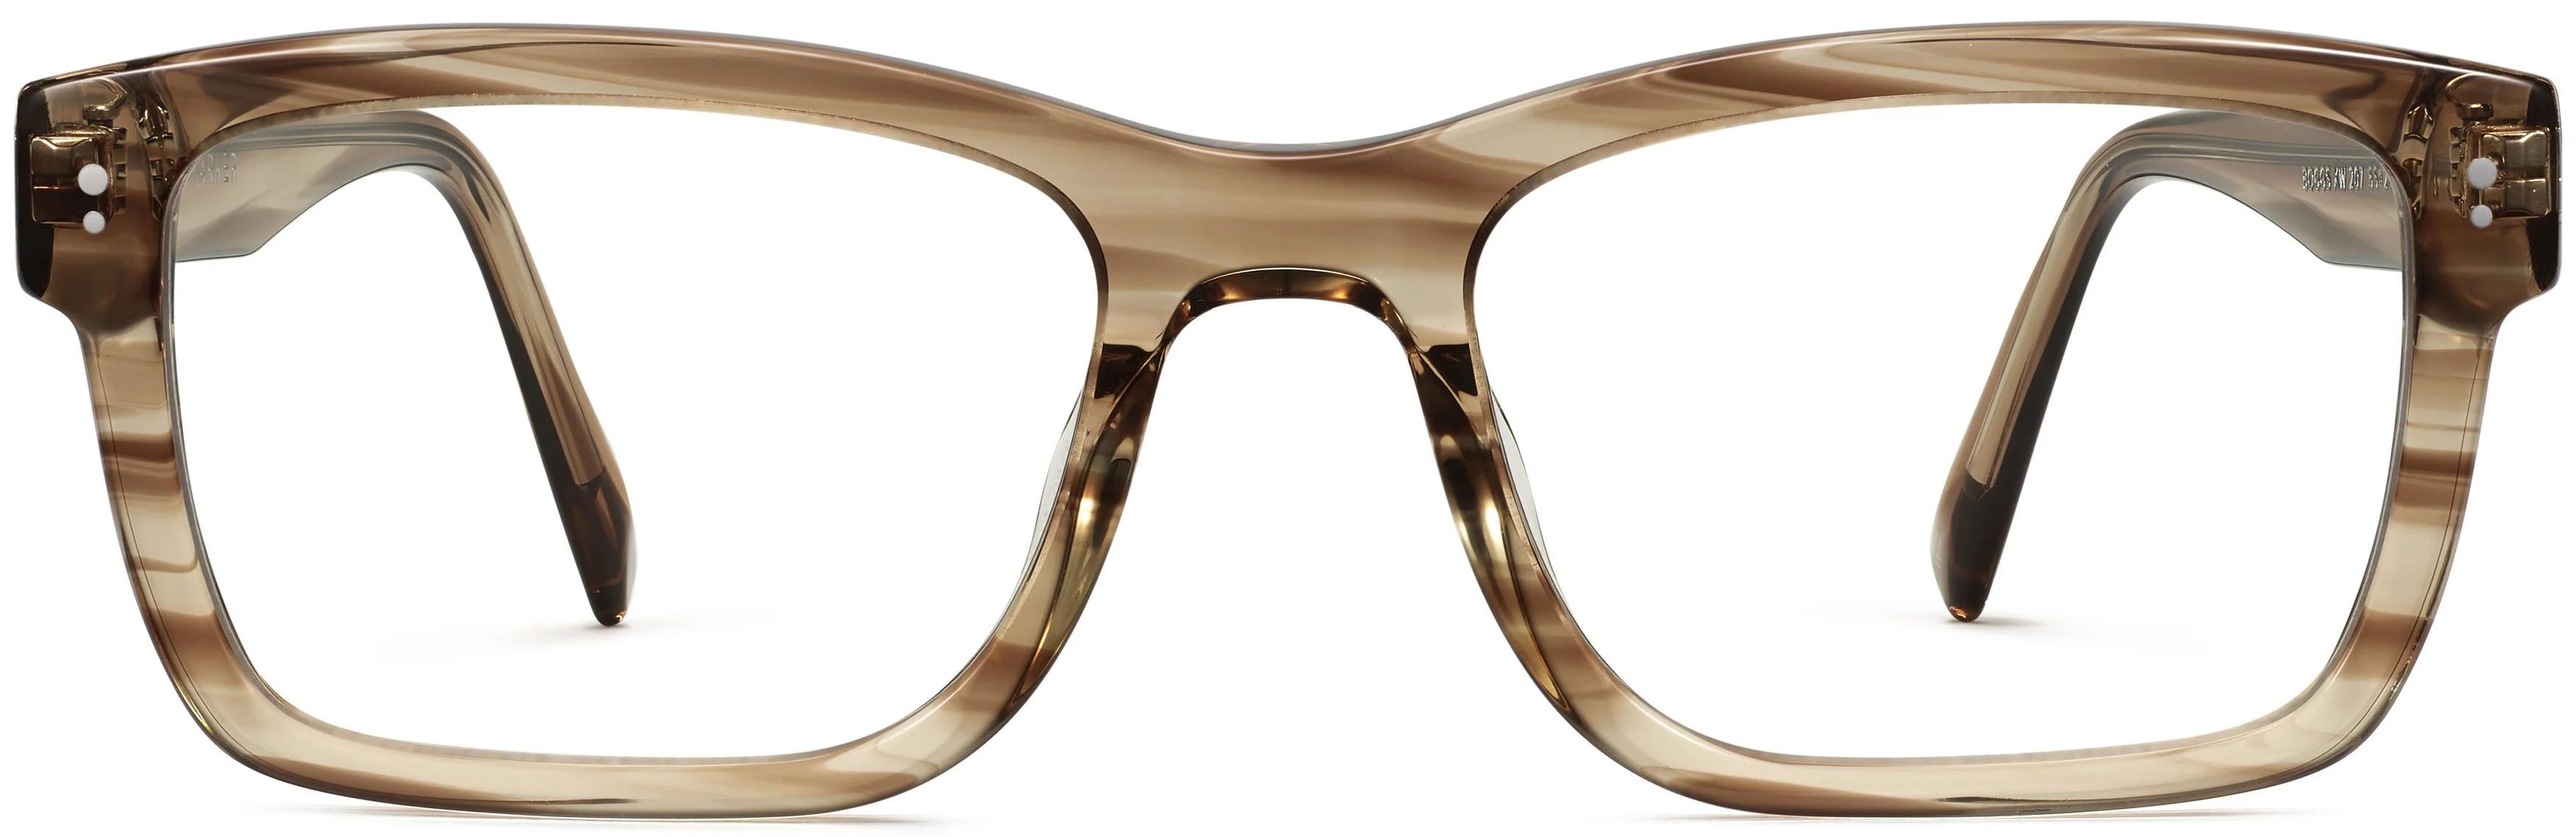 Boggs Eyeglasses in Chestnut Crystal | Warby Parker | Warby Parker (US)